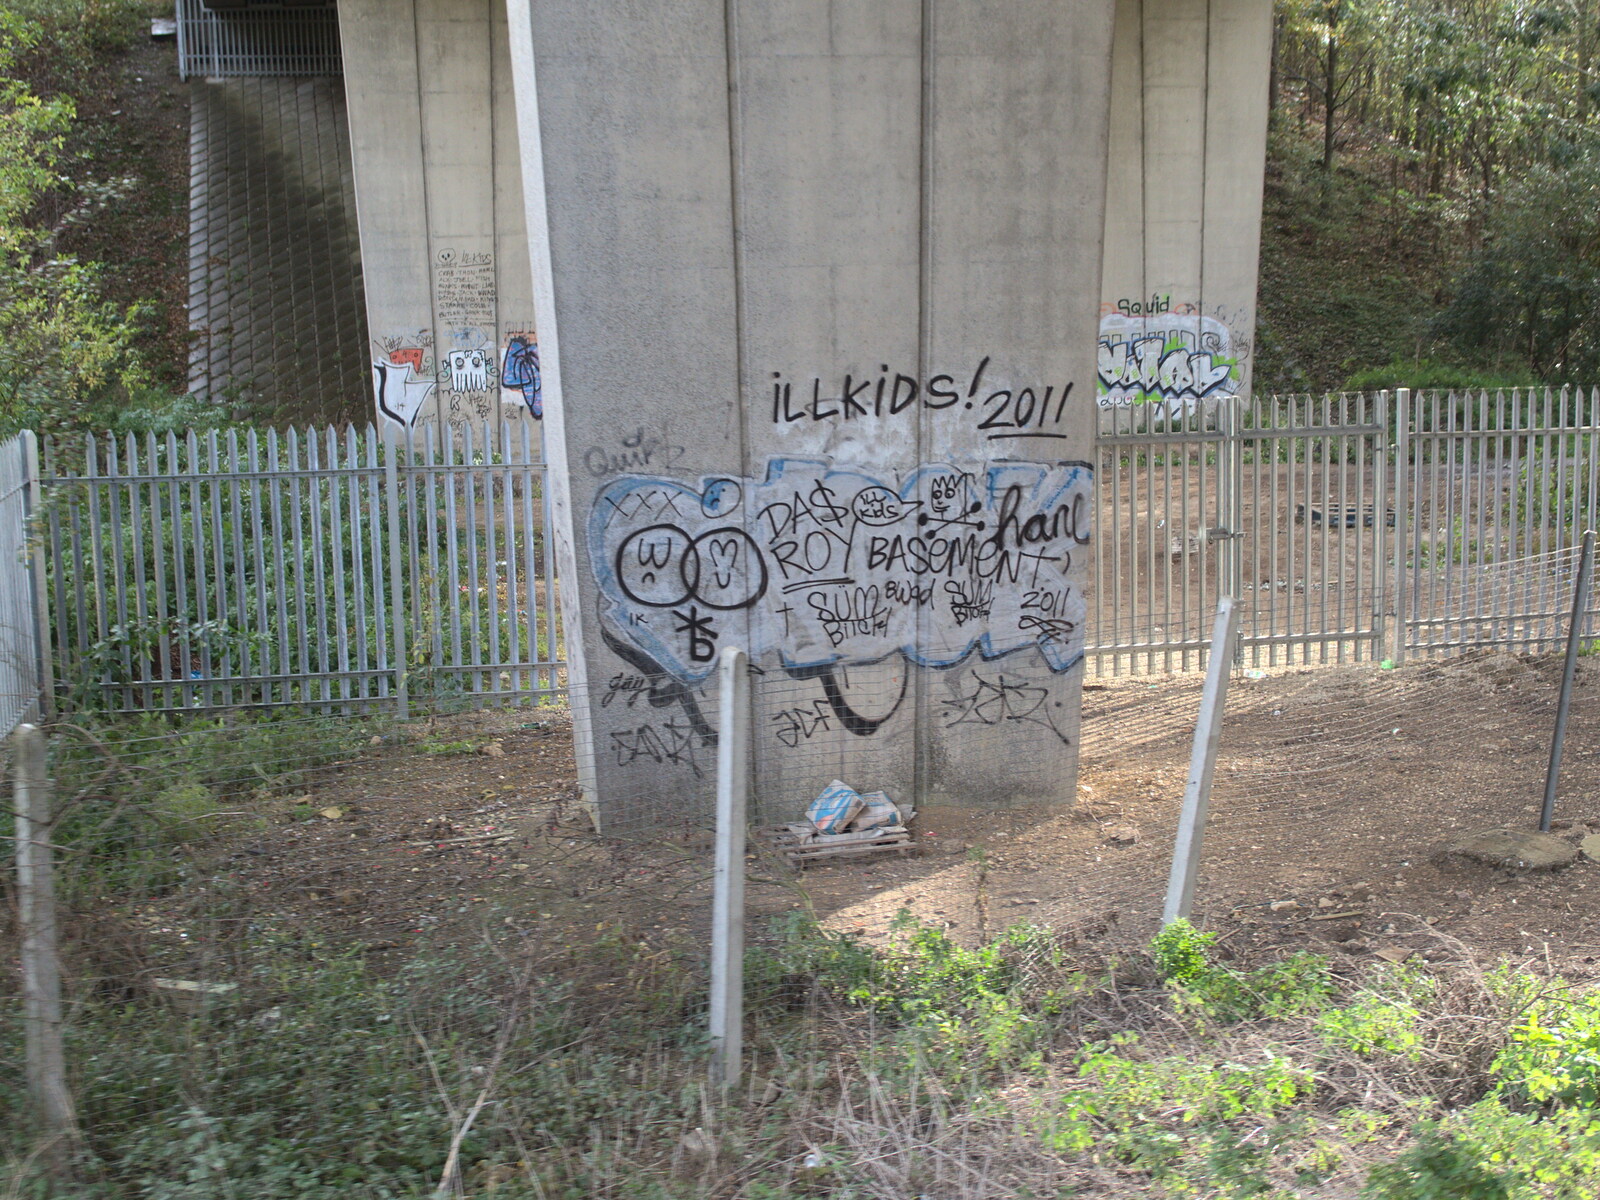 Stowmarket graffiti under the A14 from (Very) Long Train (Not) Running, Stowmarket, Suffolk - 21st October 2014